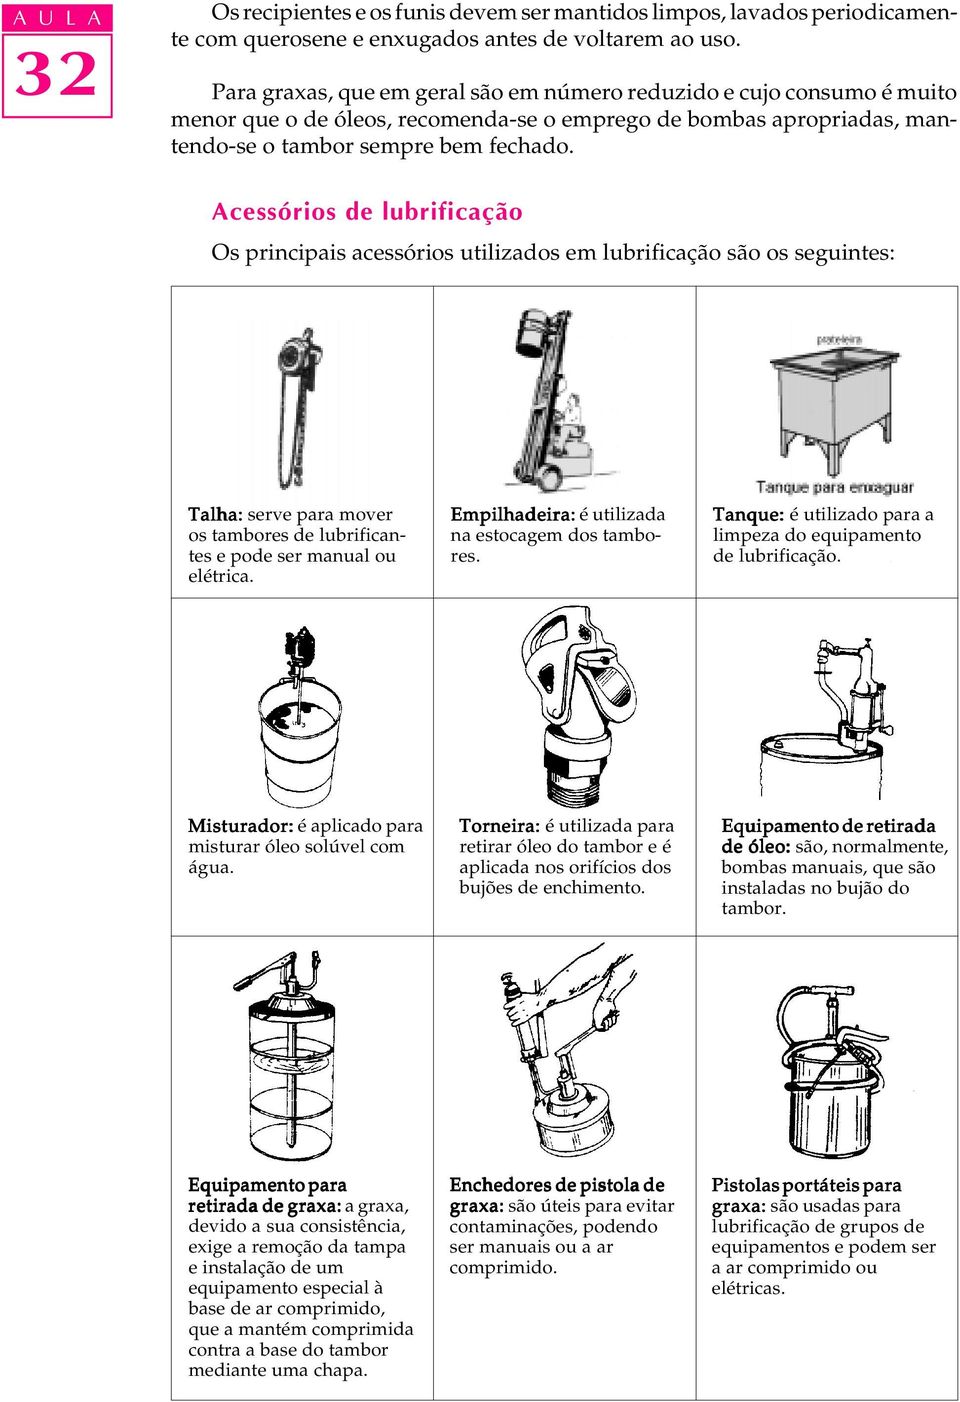 Acessórios de lubrificação Os principais acessórios utilizados em lubrificação são os seguintes: Talha: serve para mover os tambores de lubrificantes e pode ser manual ou elétrica.